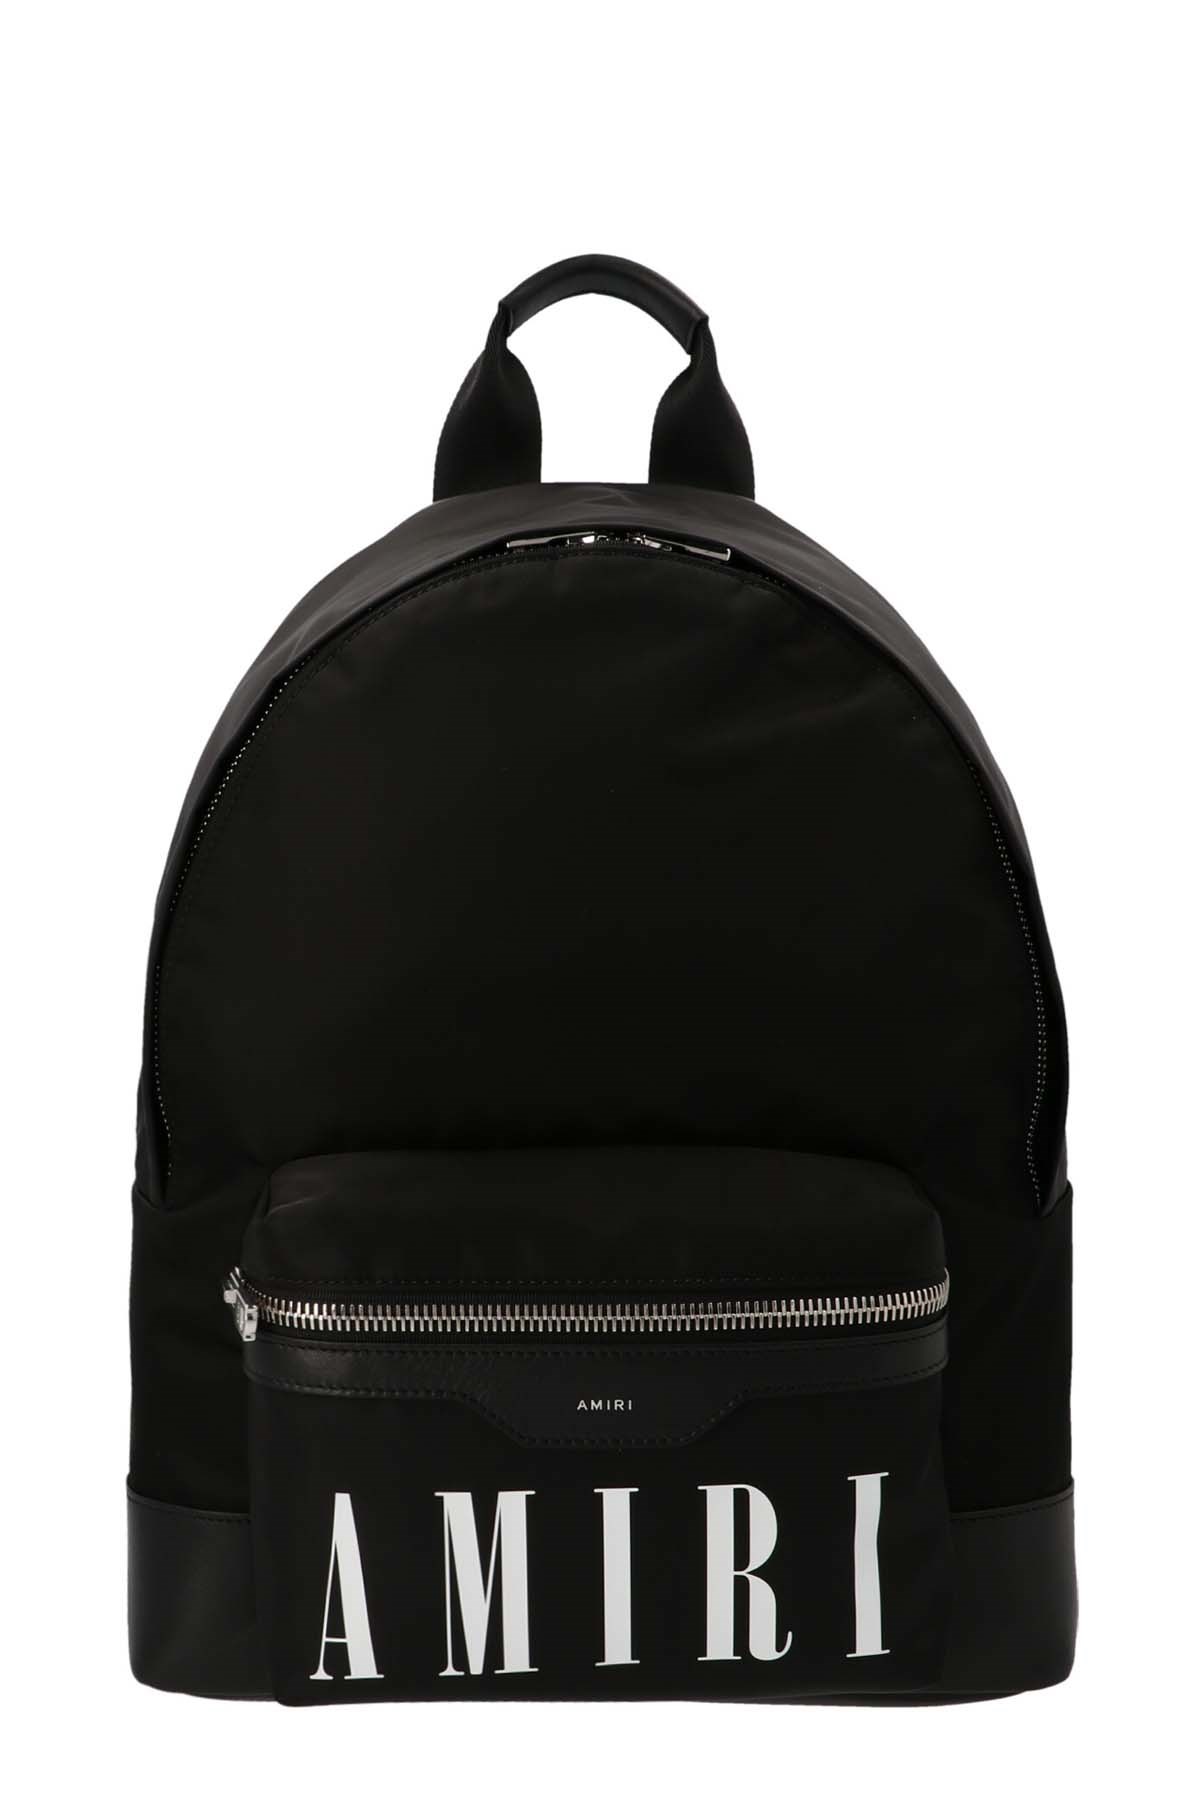 AMIRI Logo Backpack